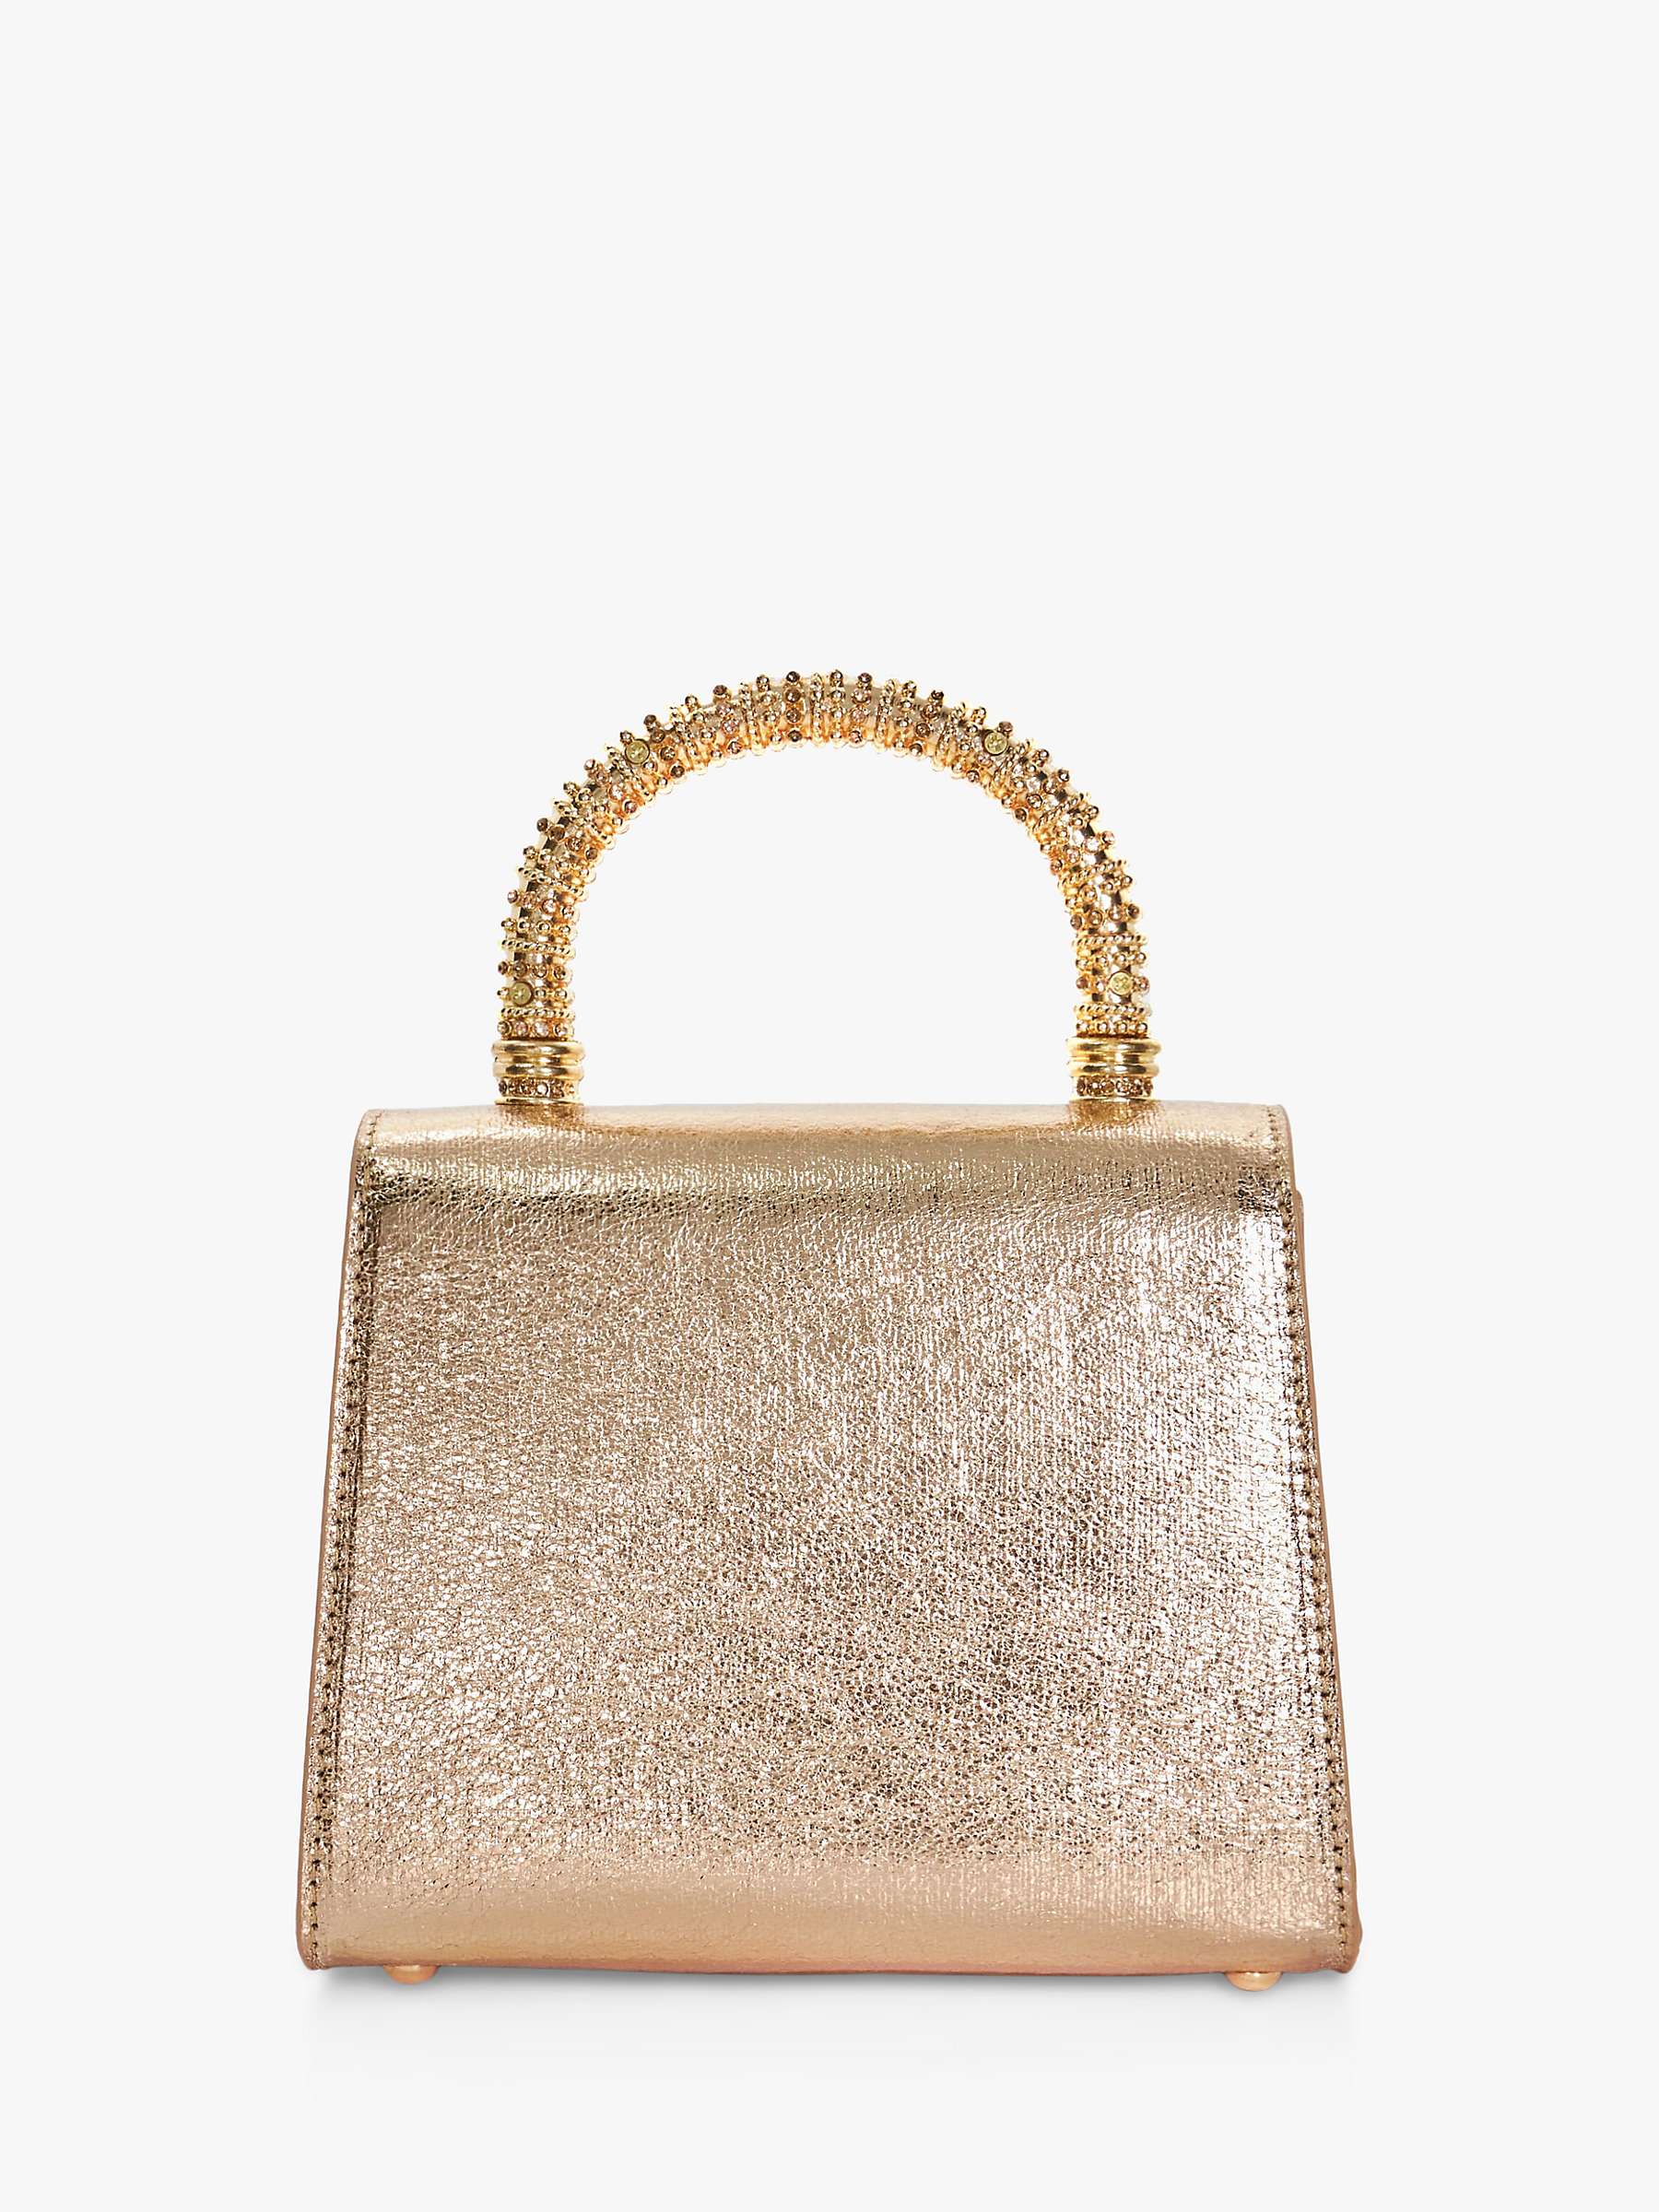 Buy Dune Bolenna Embellished Top Handle Clutch Bag, Rose Gold Online at johnlewis.com